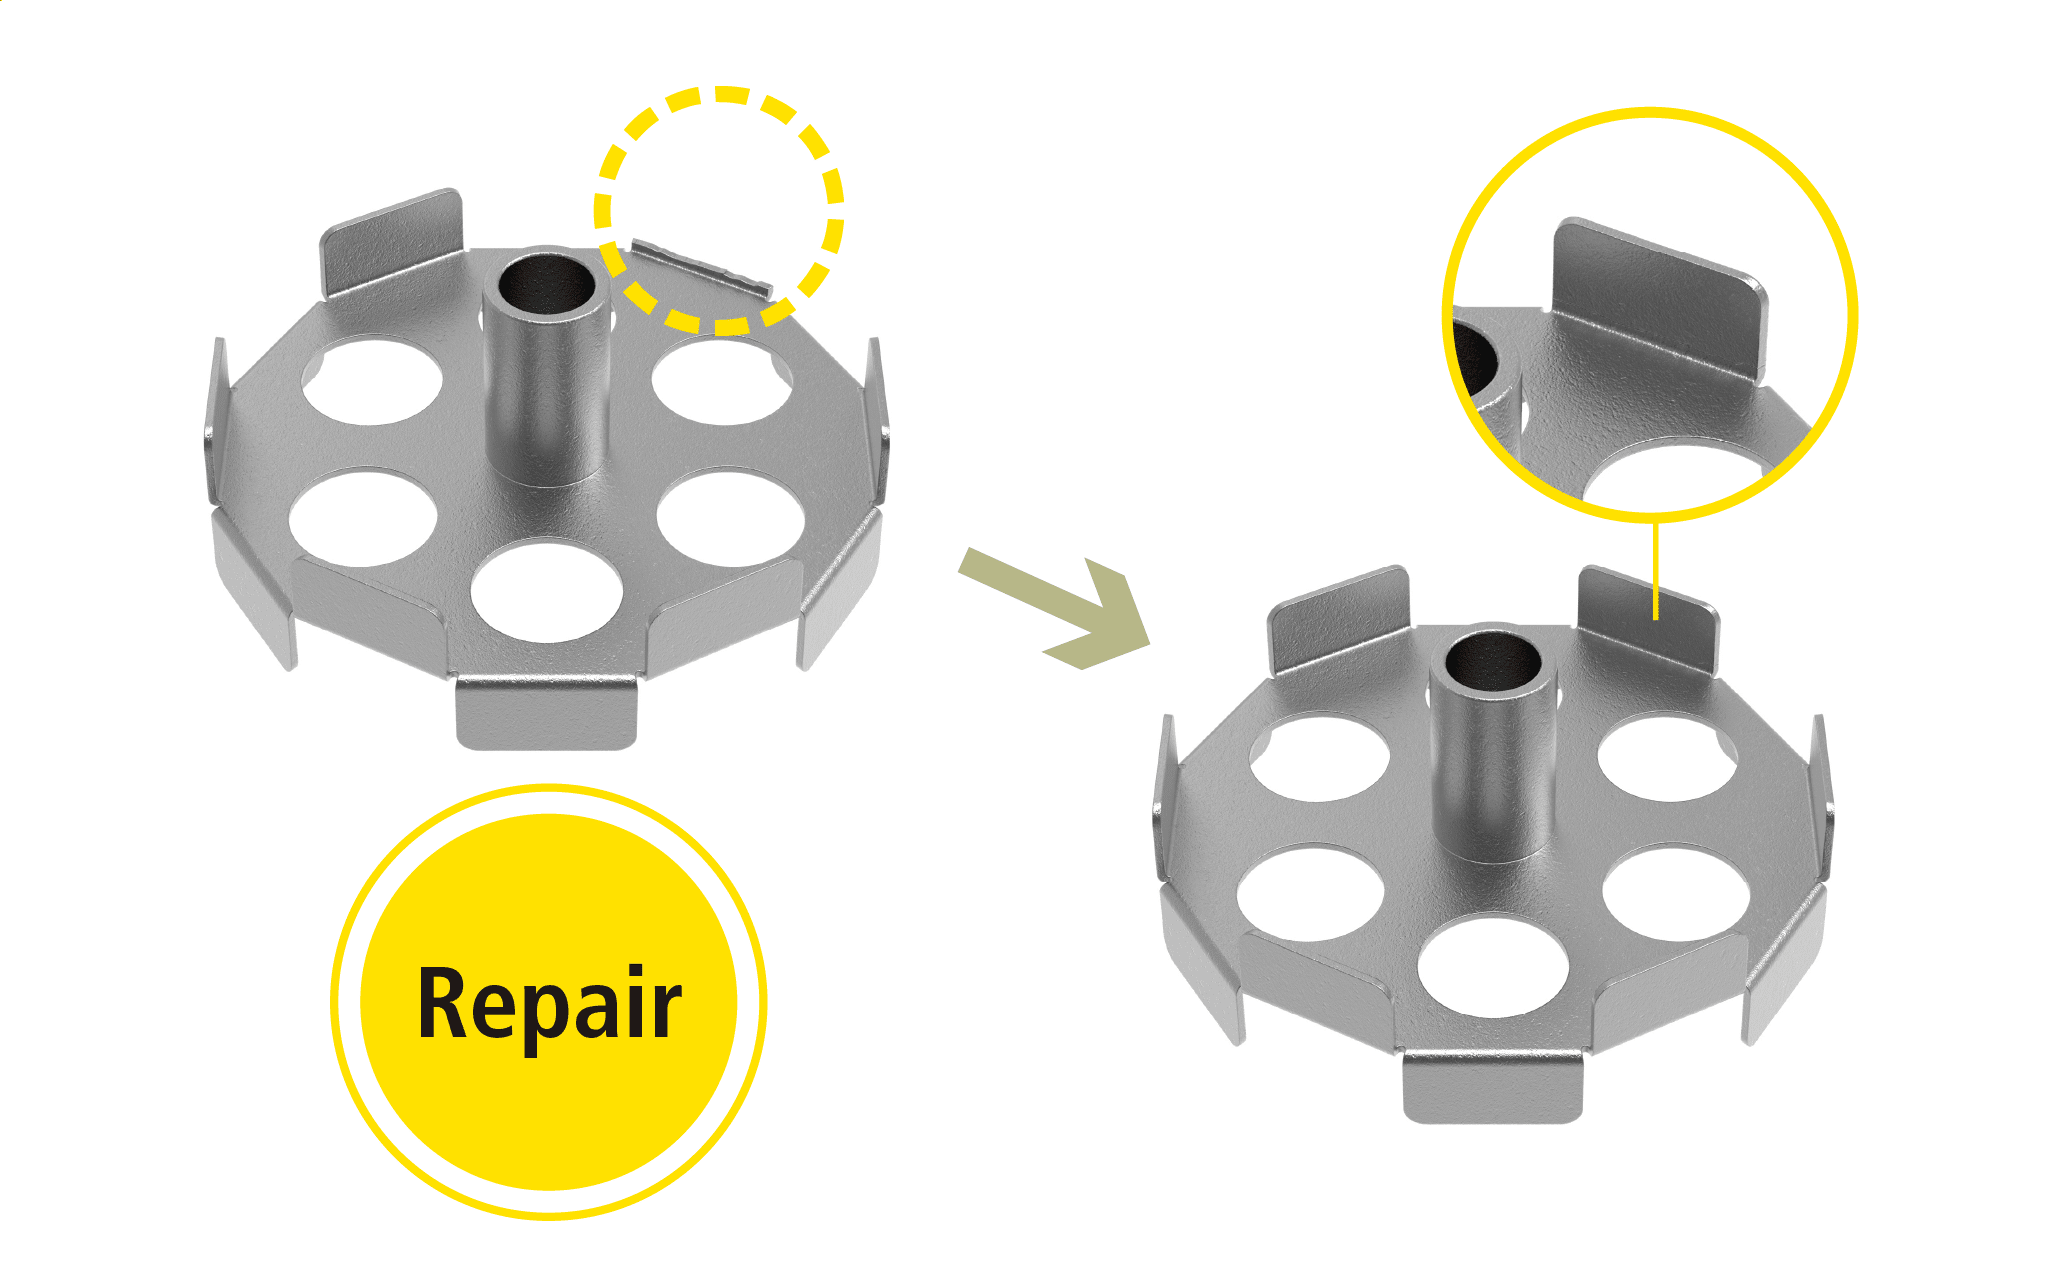 Repair of cracking and damage